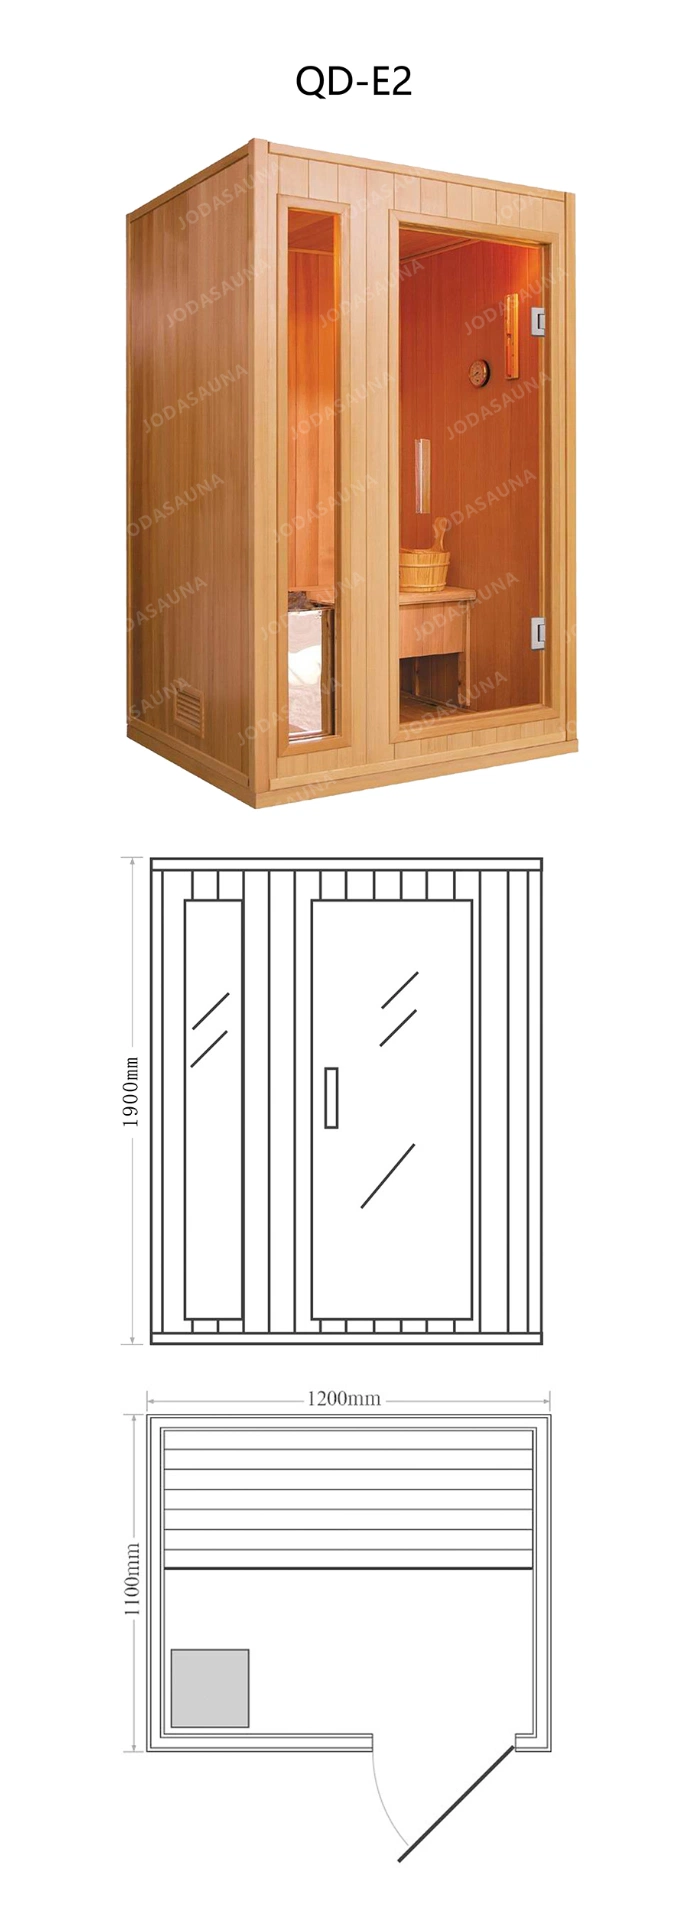 Steam Home Indoor Sauna Factory Price Best Quality Stone Cabin Sauna